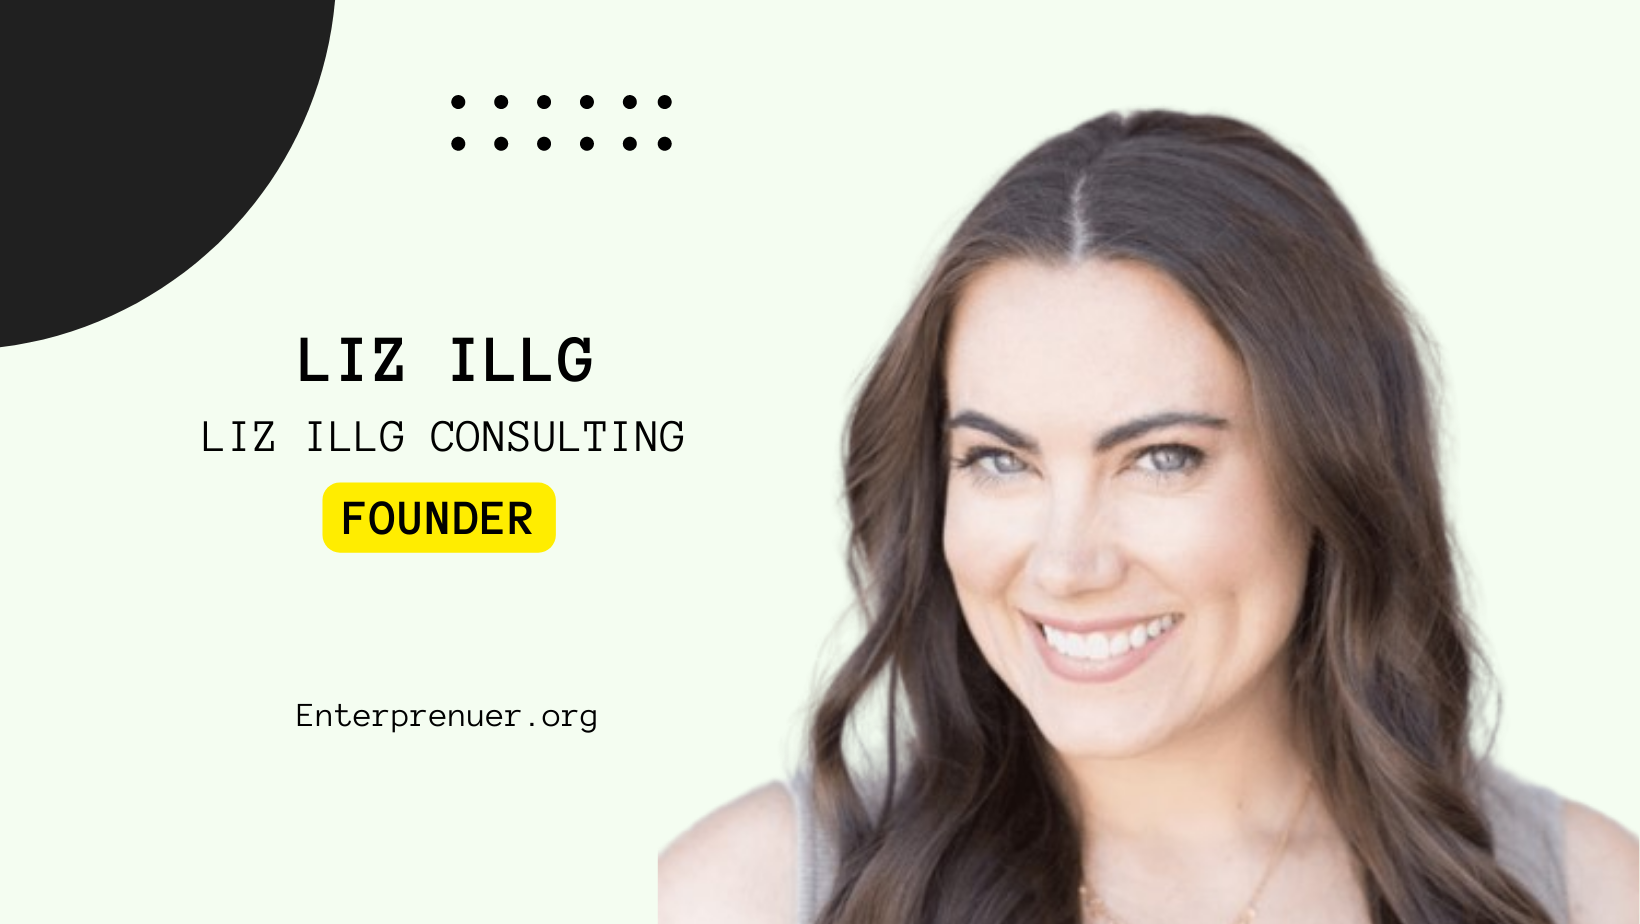 Meet Liz Illg Founder of Liz Illg Consulting — Enterprenuer